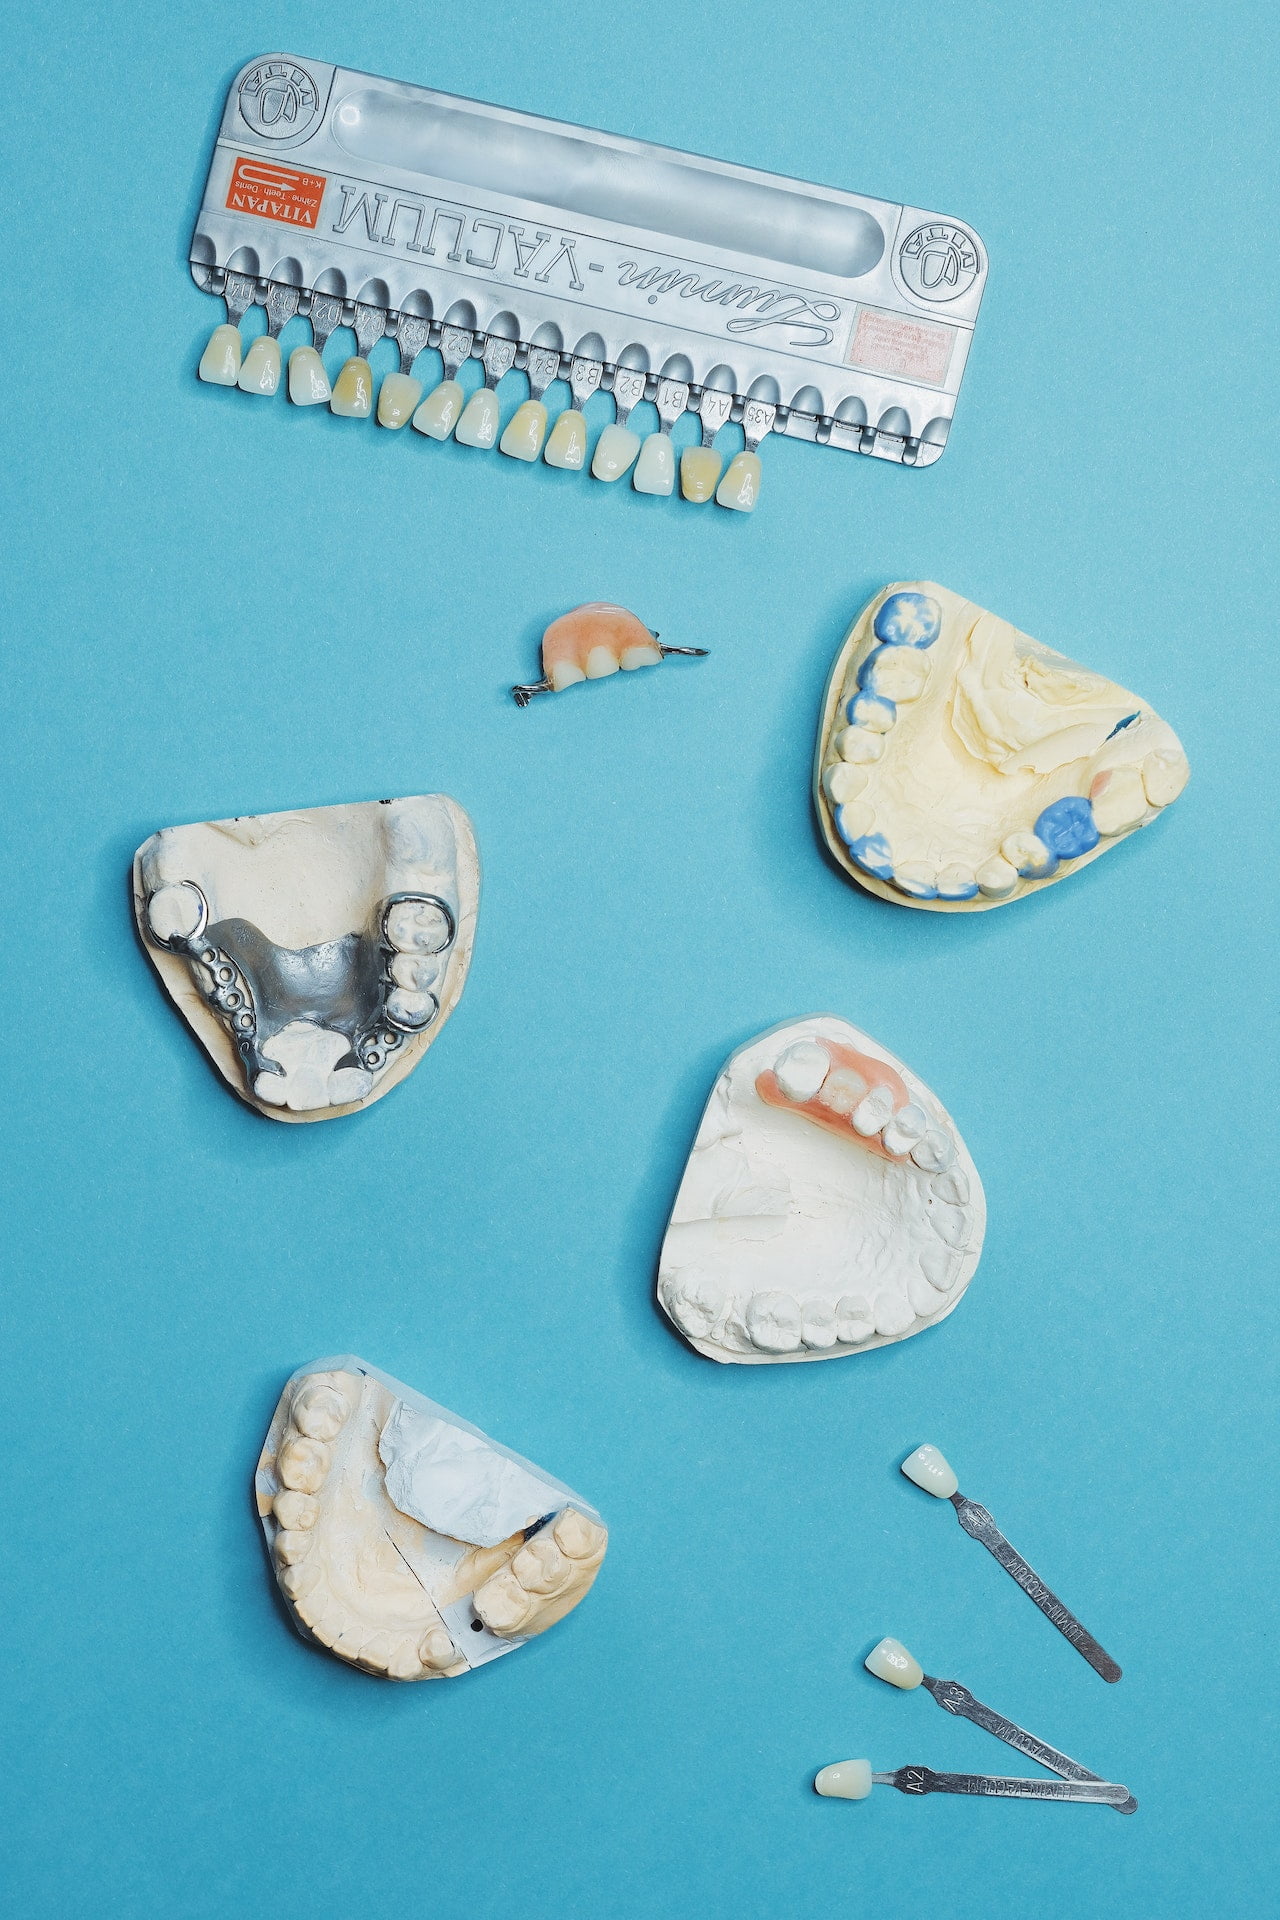 Ce sunt fatetele dentare si de ce sunt necesare?